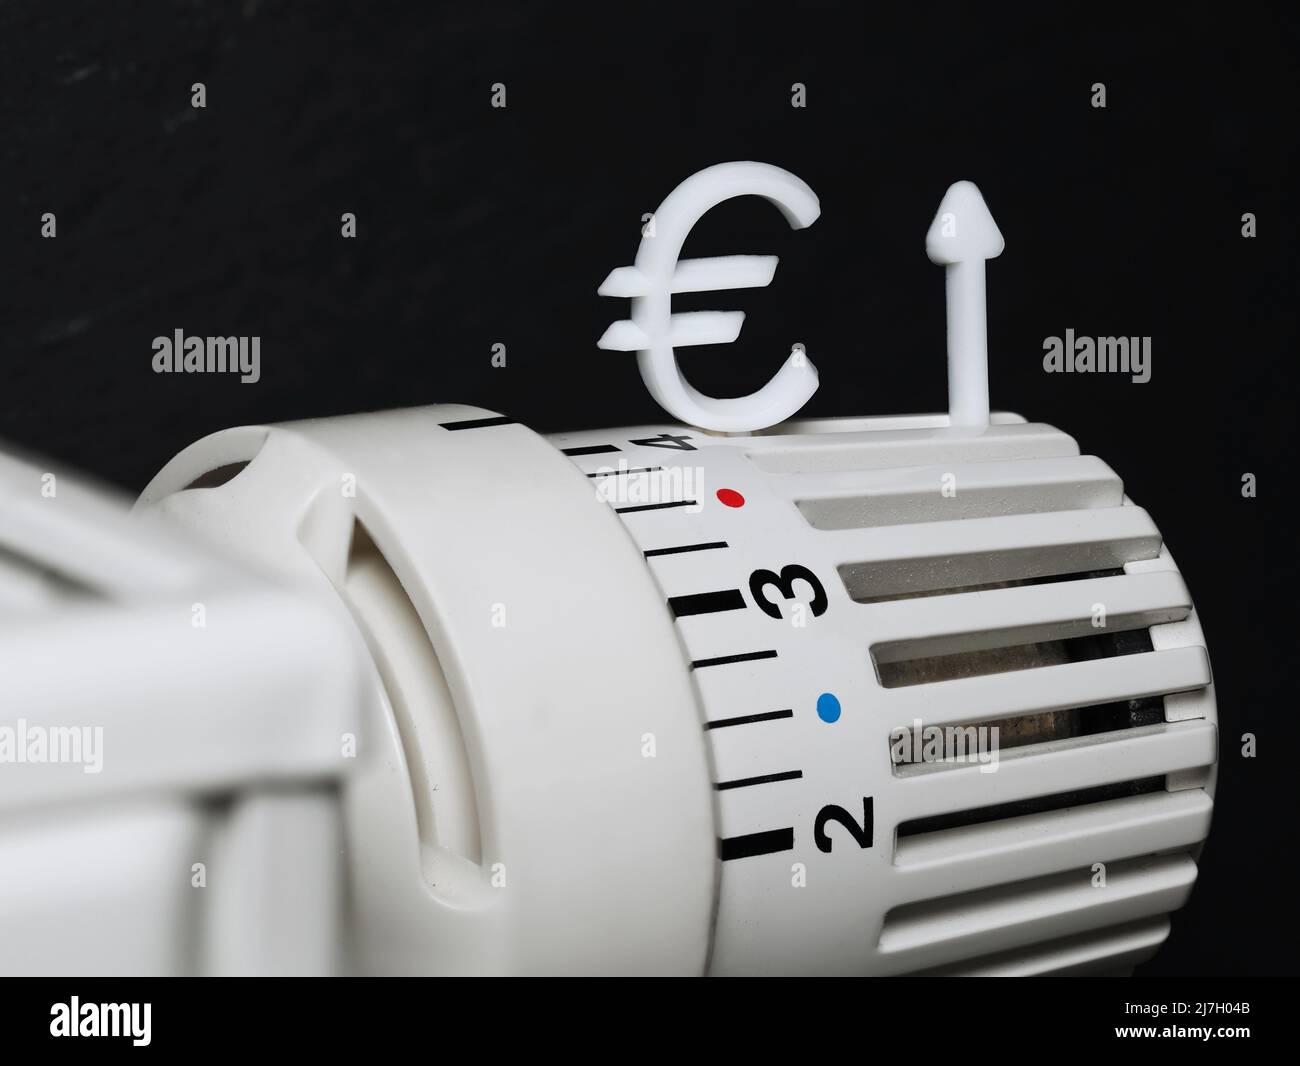 un gros plan d'un thermostat de radiateur avec un signe de l'euro et une flèche vers le haut symbolisent la hausse des coûts de chauffage, concept de la hausse des prix de l'énergie à l'avenir Banque D'Images